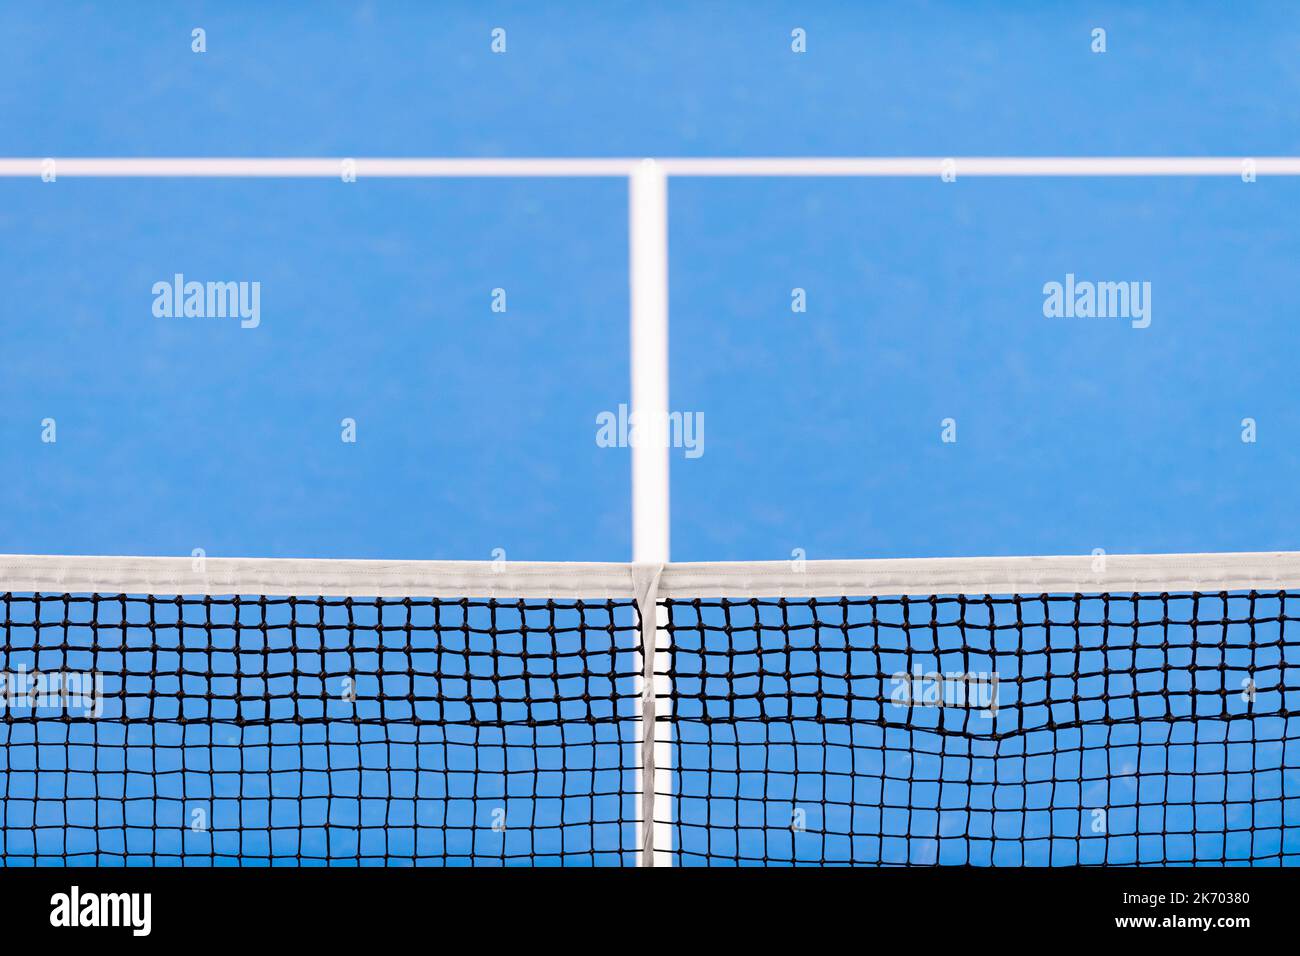 Filet de paddle-tennis bleu et terrain dur. Concept de compétition de tennis. Affiche sur le thème du sport horizontal, cartes de vœux, en-têtes, site Web et application Banque D'Images